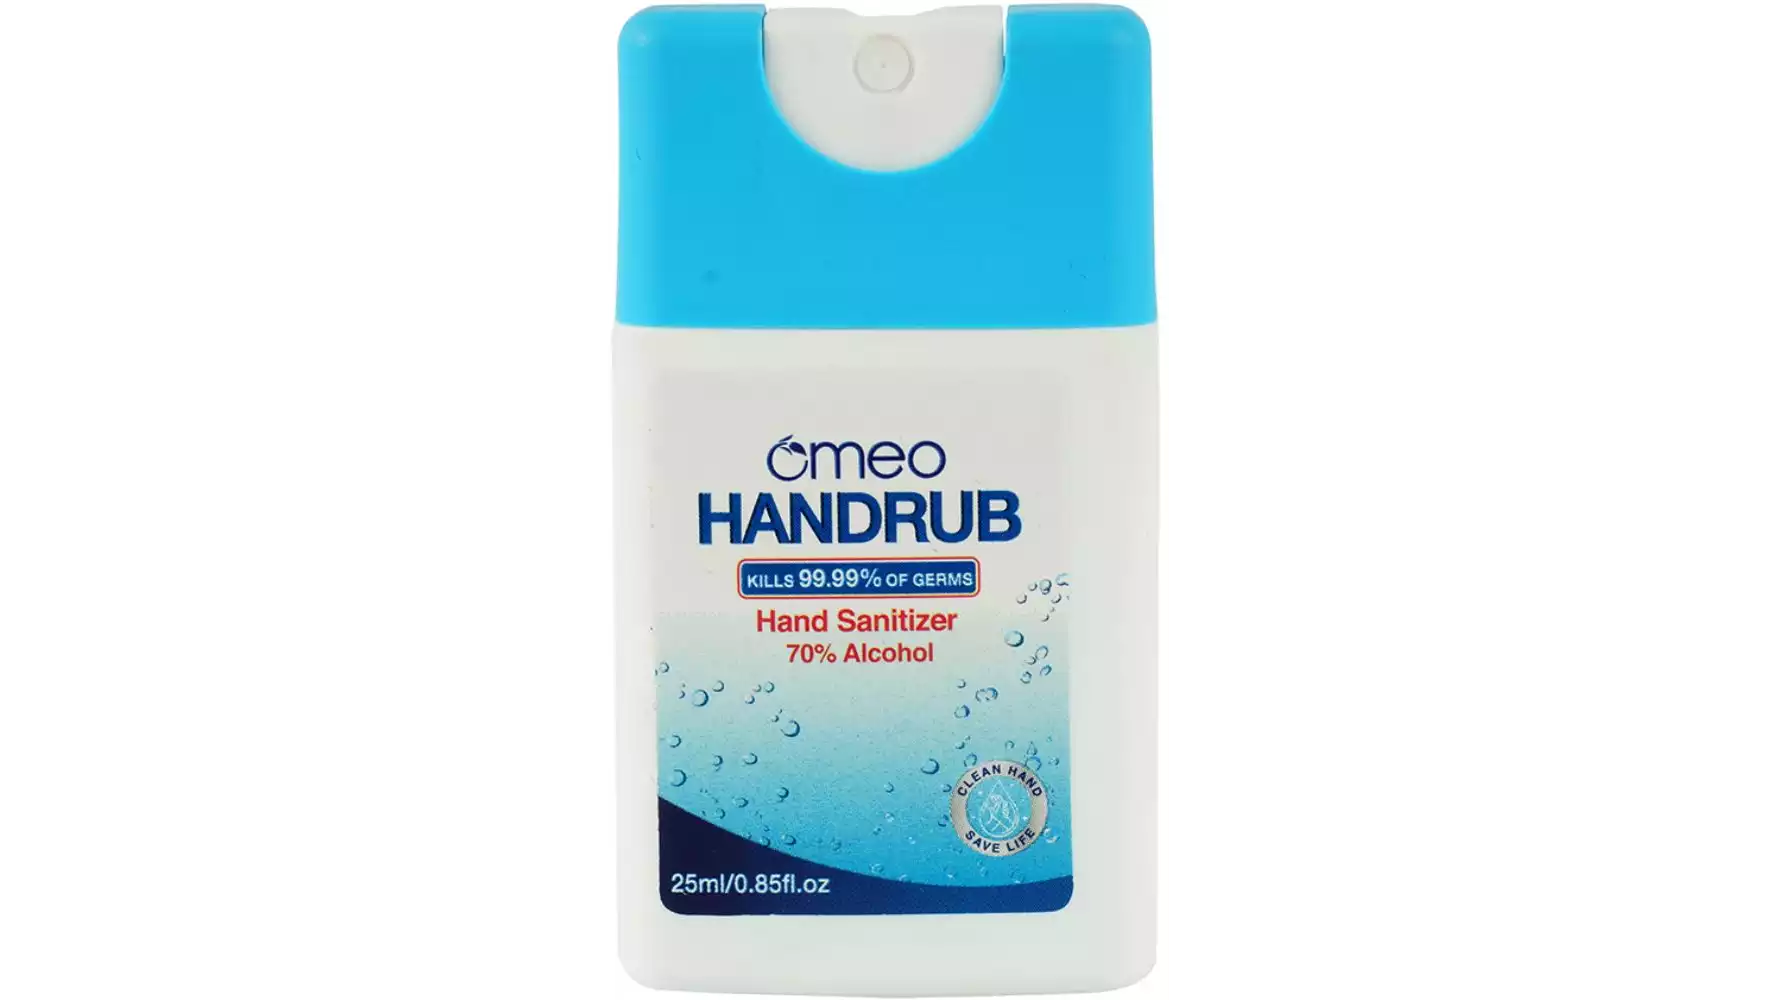 Omeo Pocket Handrub Sanitizer (25ml)